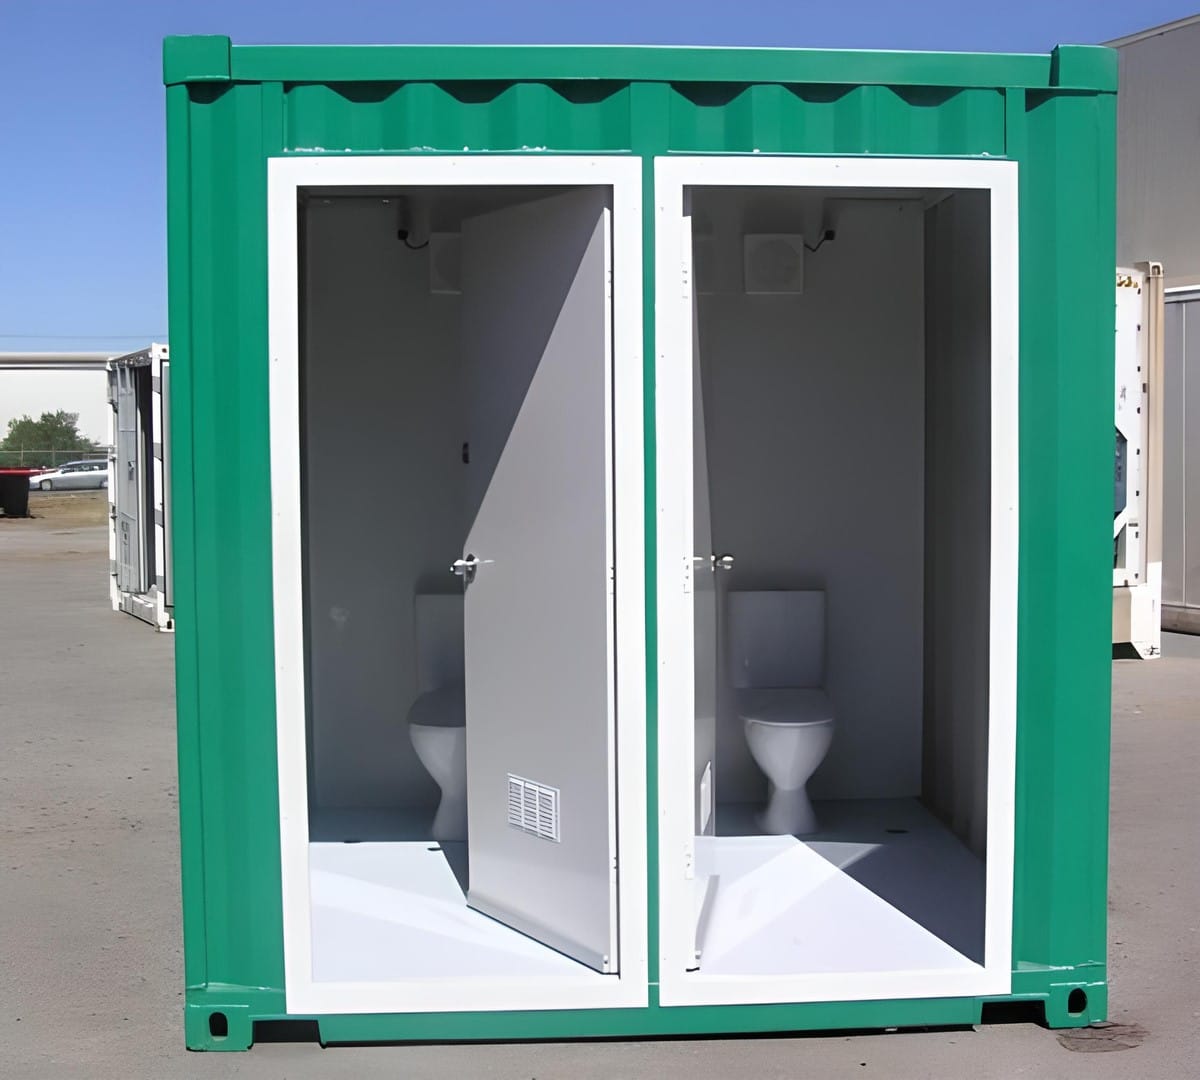 Container 10 feet có nhiều ưu điểm nổi bật trở thành giải pháp xây dựng thông minh và tiết kiệm cho các chủ đầu tư